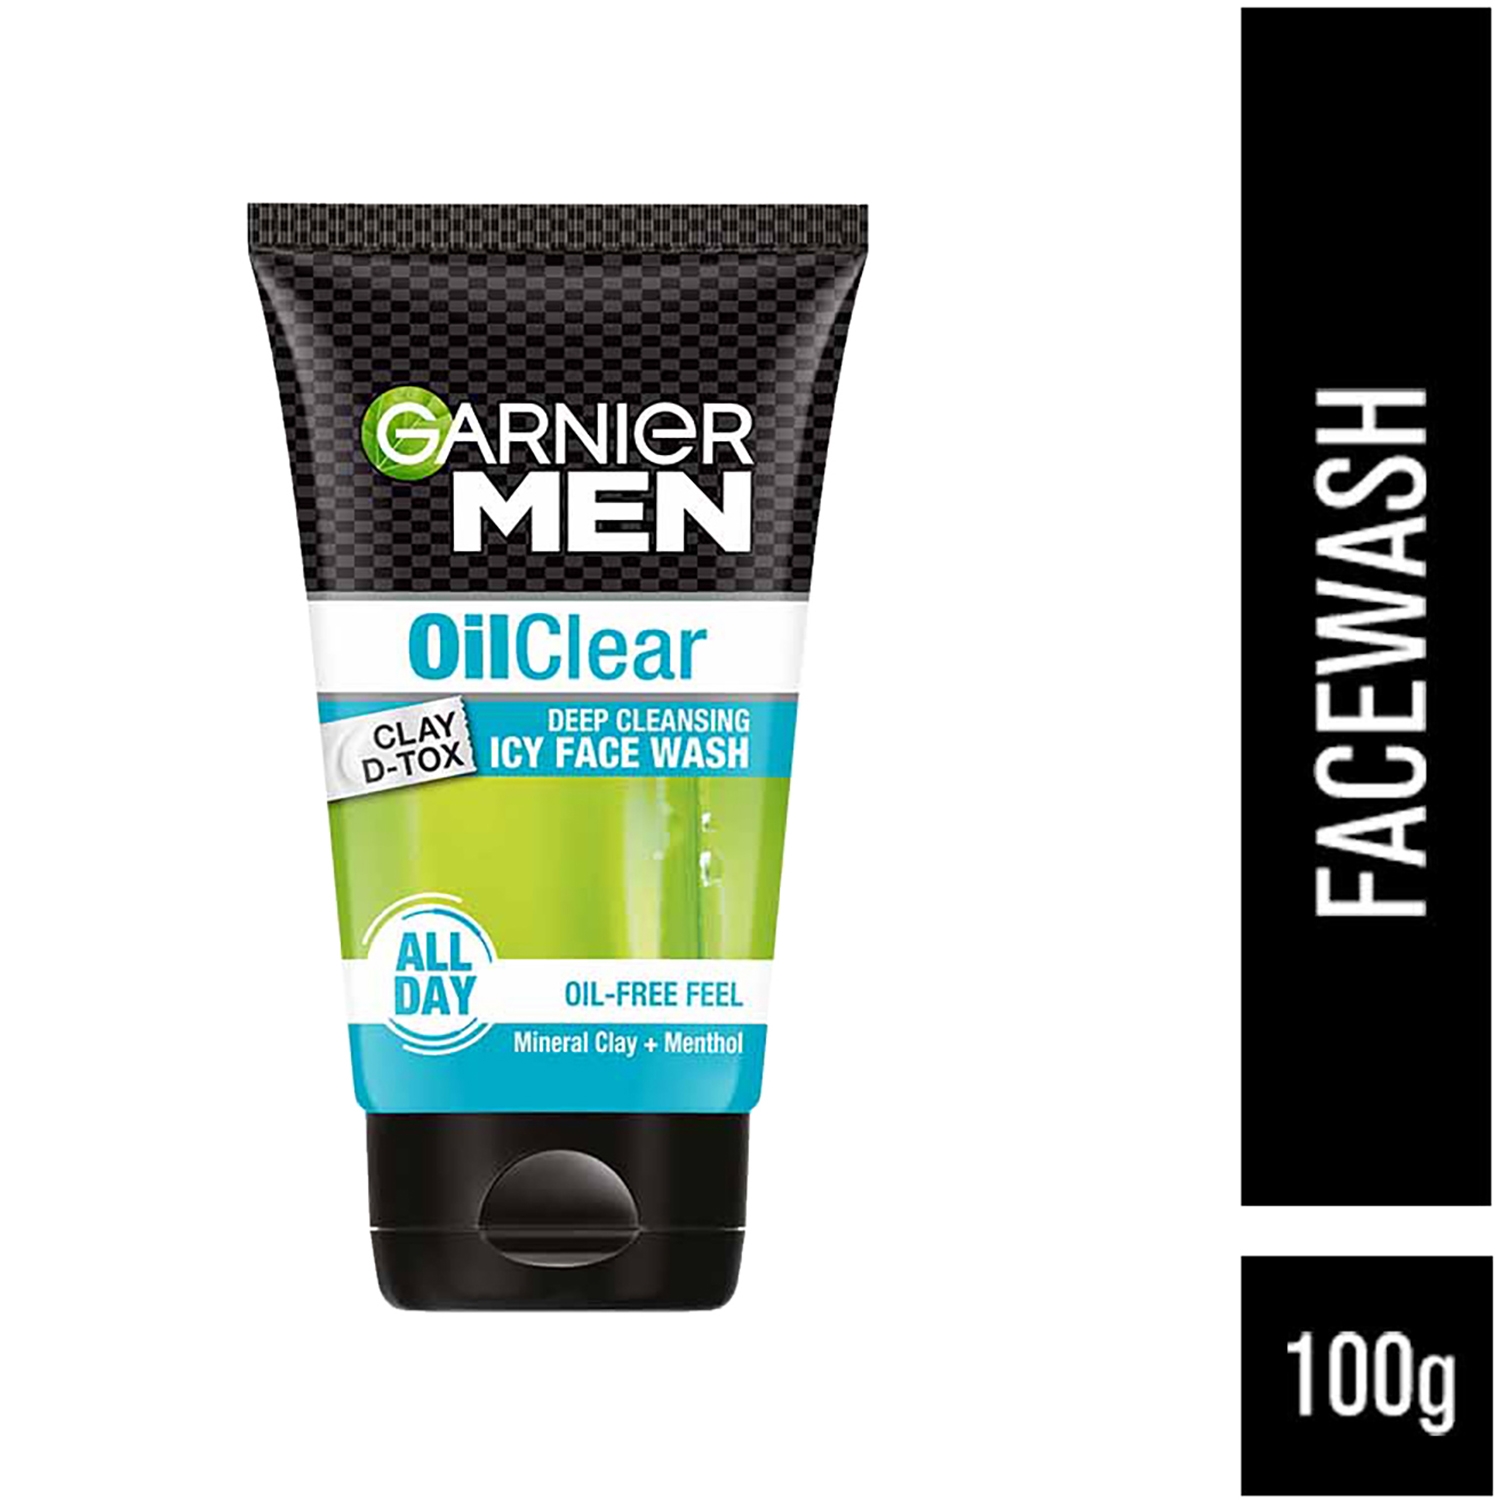 Garnier | Garnier Men Oil Clear Clay D-Tox Deep Cleansing Icy Face Wash (100g)